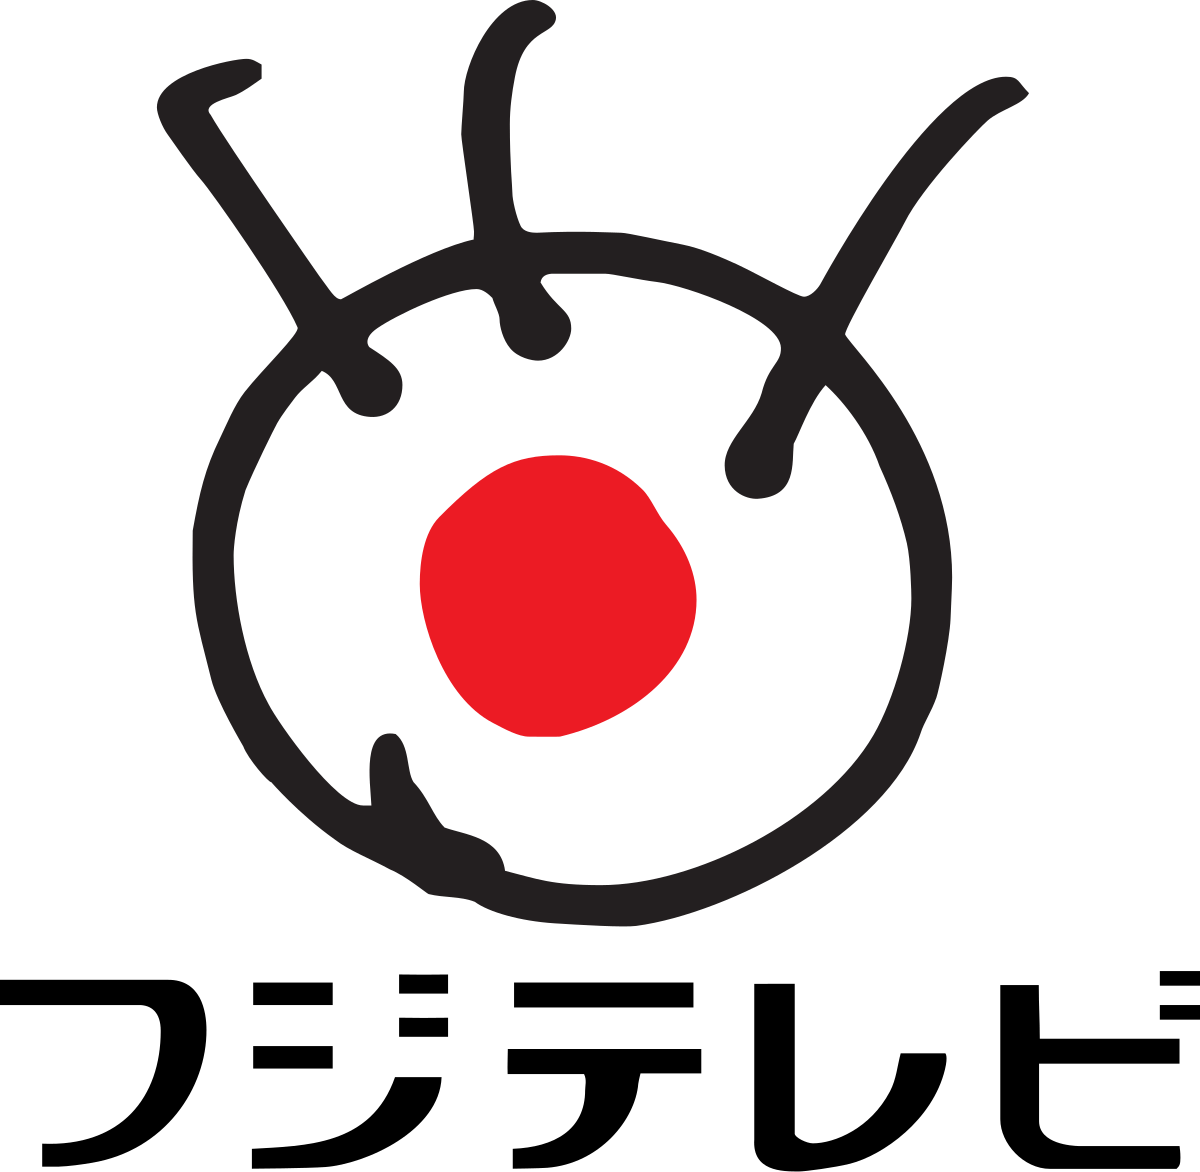 Old Fujifilm Logo - Fuji TV